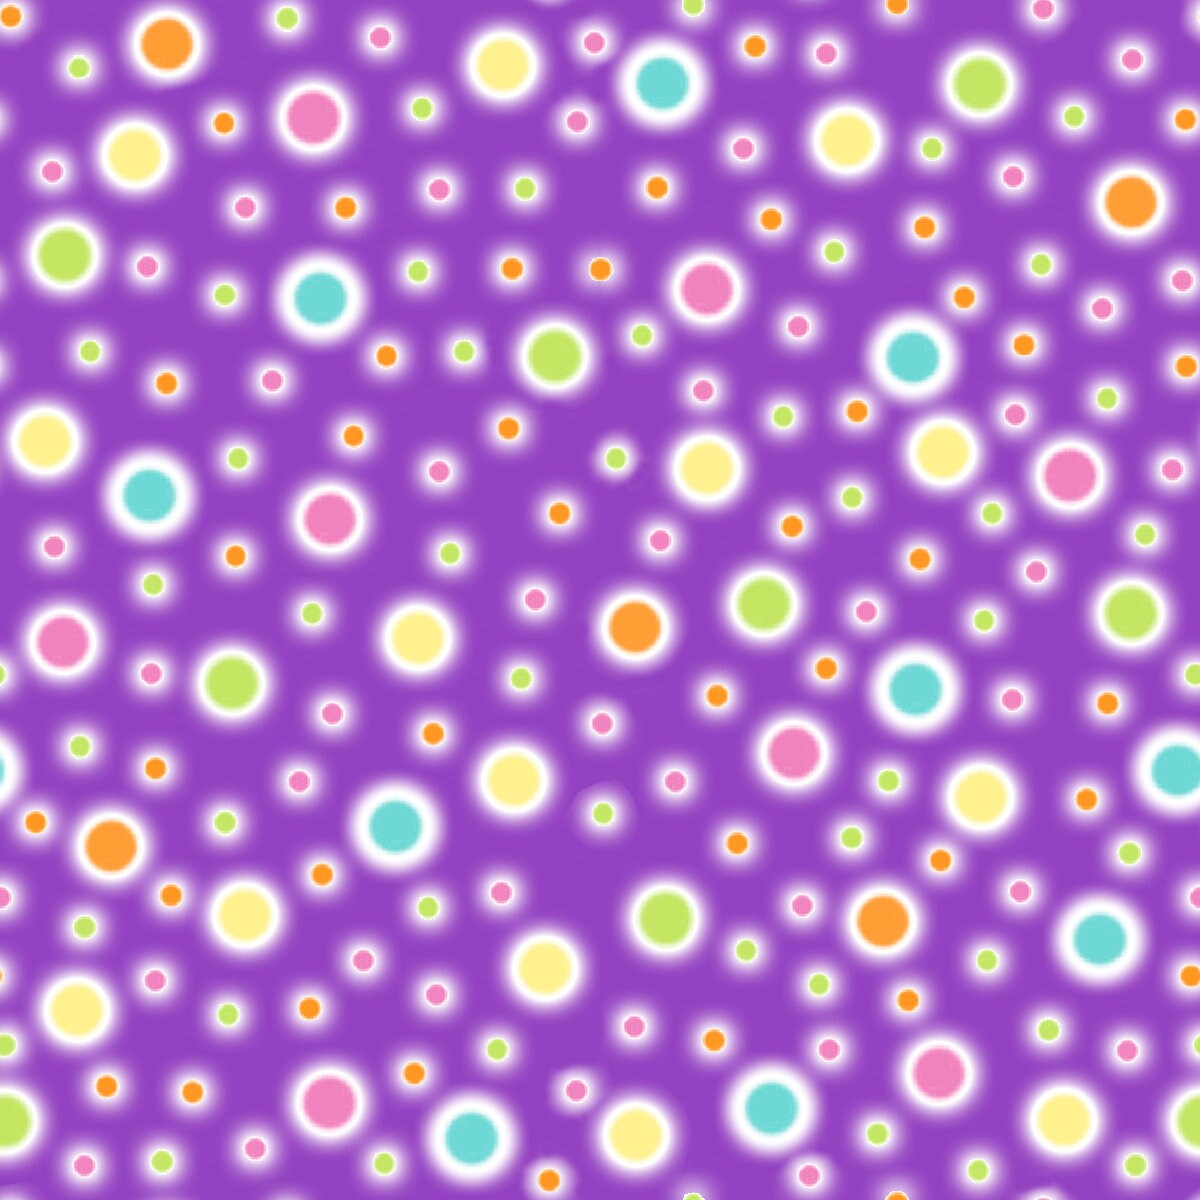 Emilia Dreams On Dots Purple 9943-55 Cotton Woven Fabric